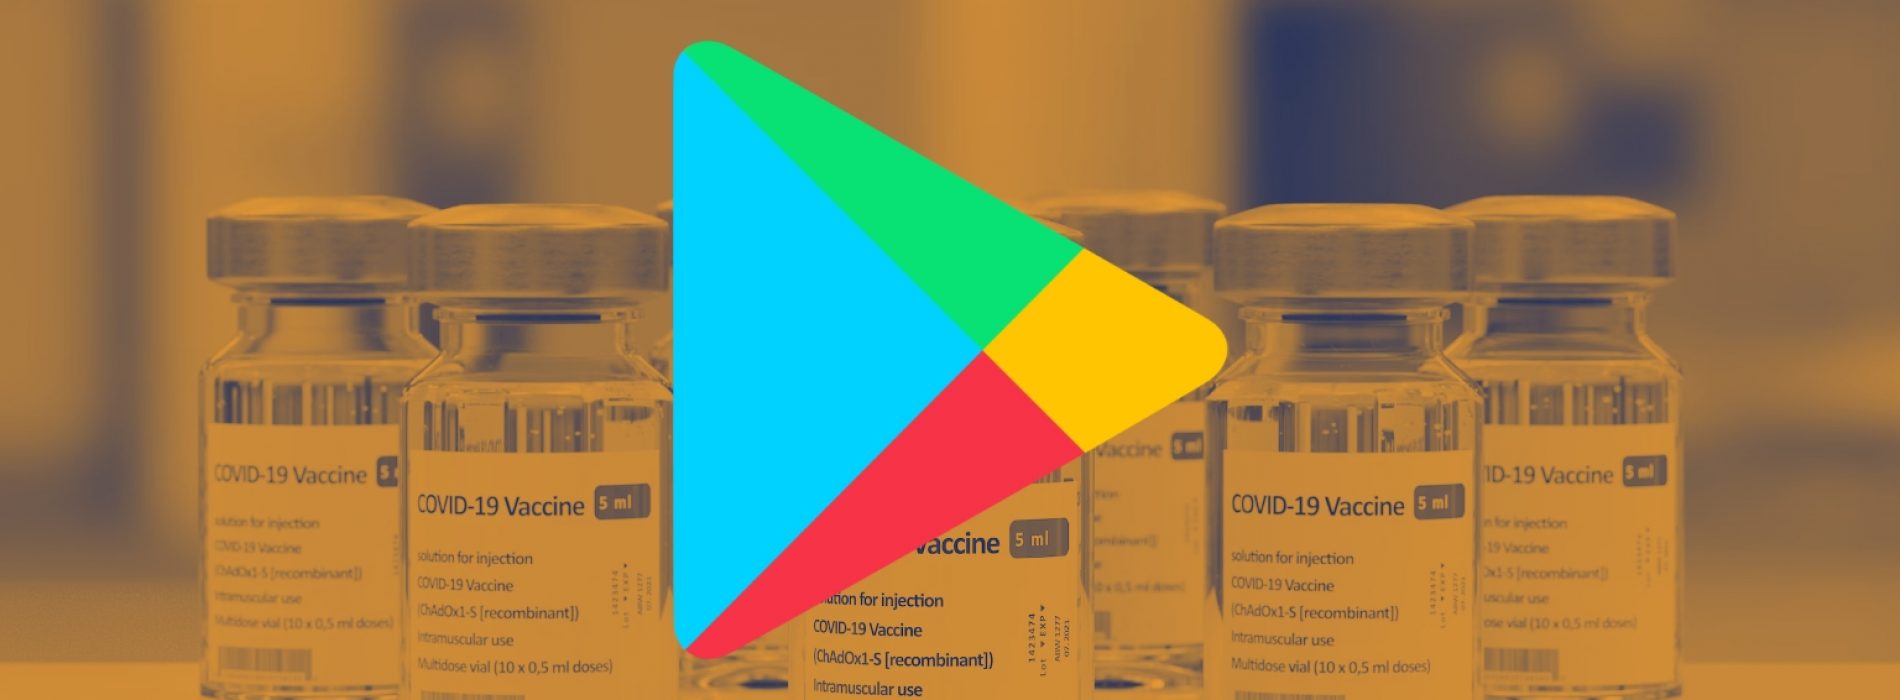 Google verbiedt apps met “misleidende gezondheidsclaims die in tegenspraak zijn met bestaande medische consensus”